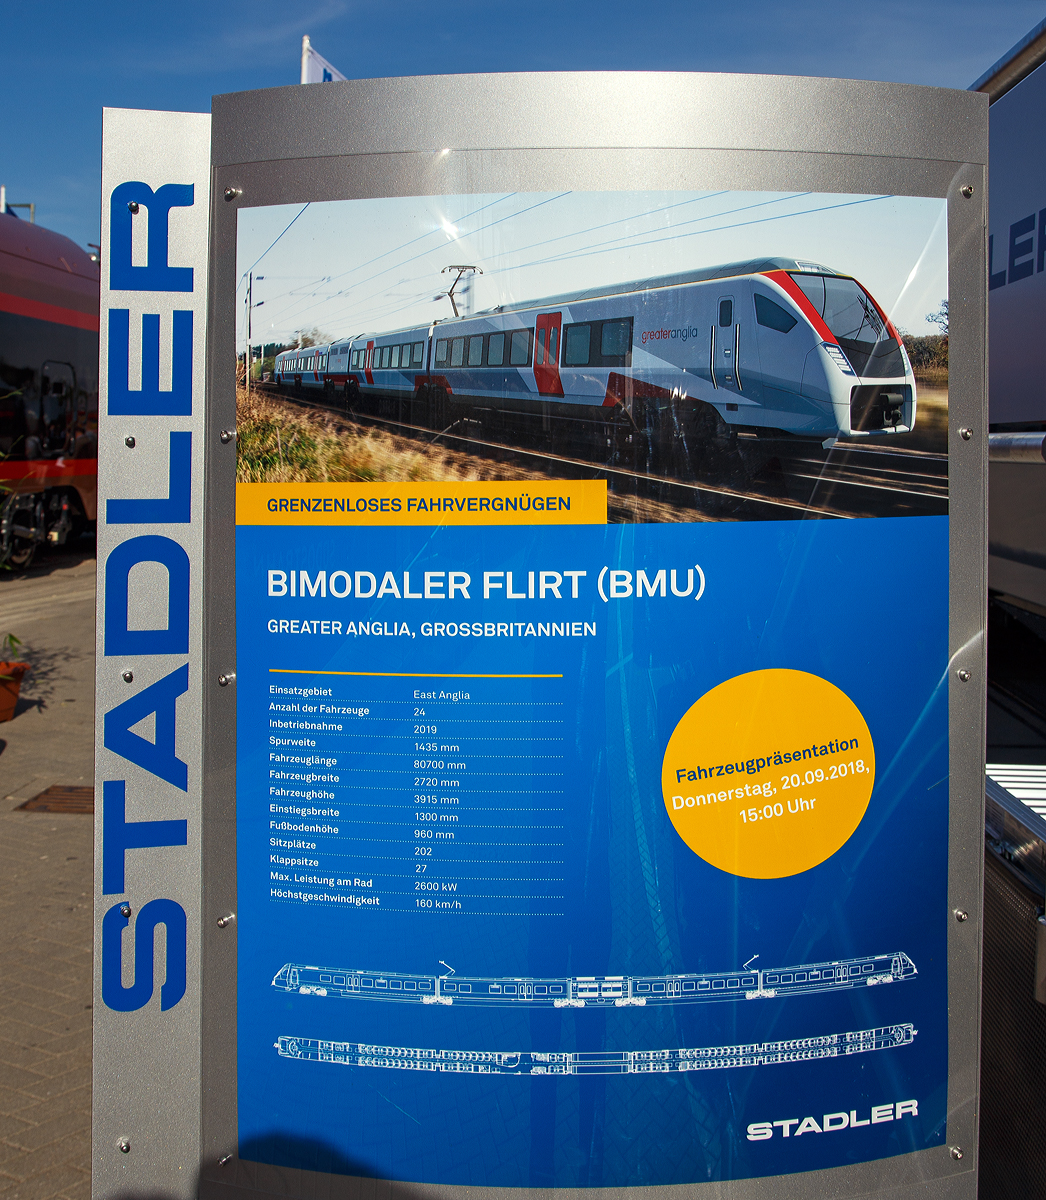 
Die Stadler-Werbetafel zum vierteiligen FLIRT-Triebzug mit bimodalem Antrieb (BMU) der British Rail Class 755/4 fr die Greater Anglia (GB), am 19.09.2018 auf der InnoTrans 2018 in Berlin. 